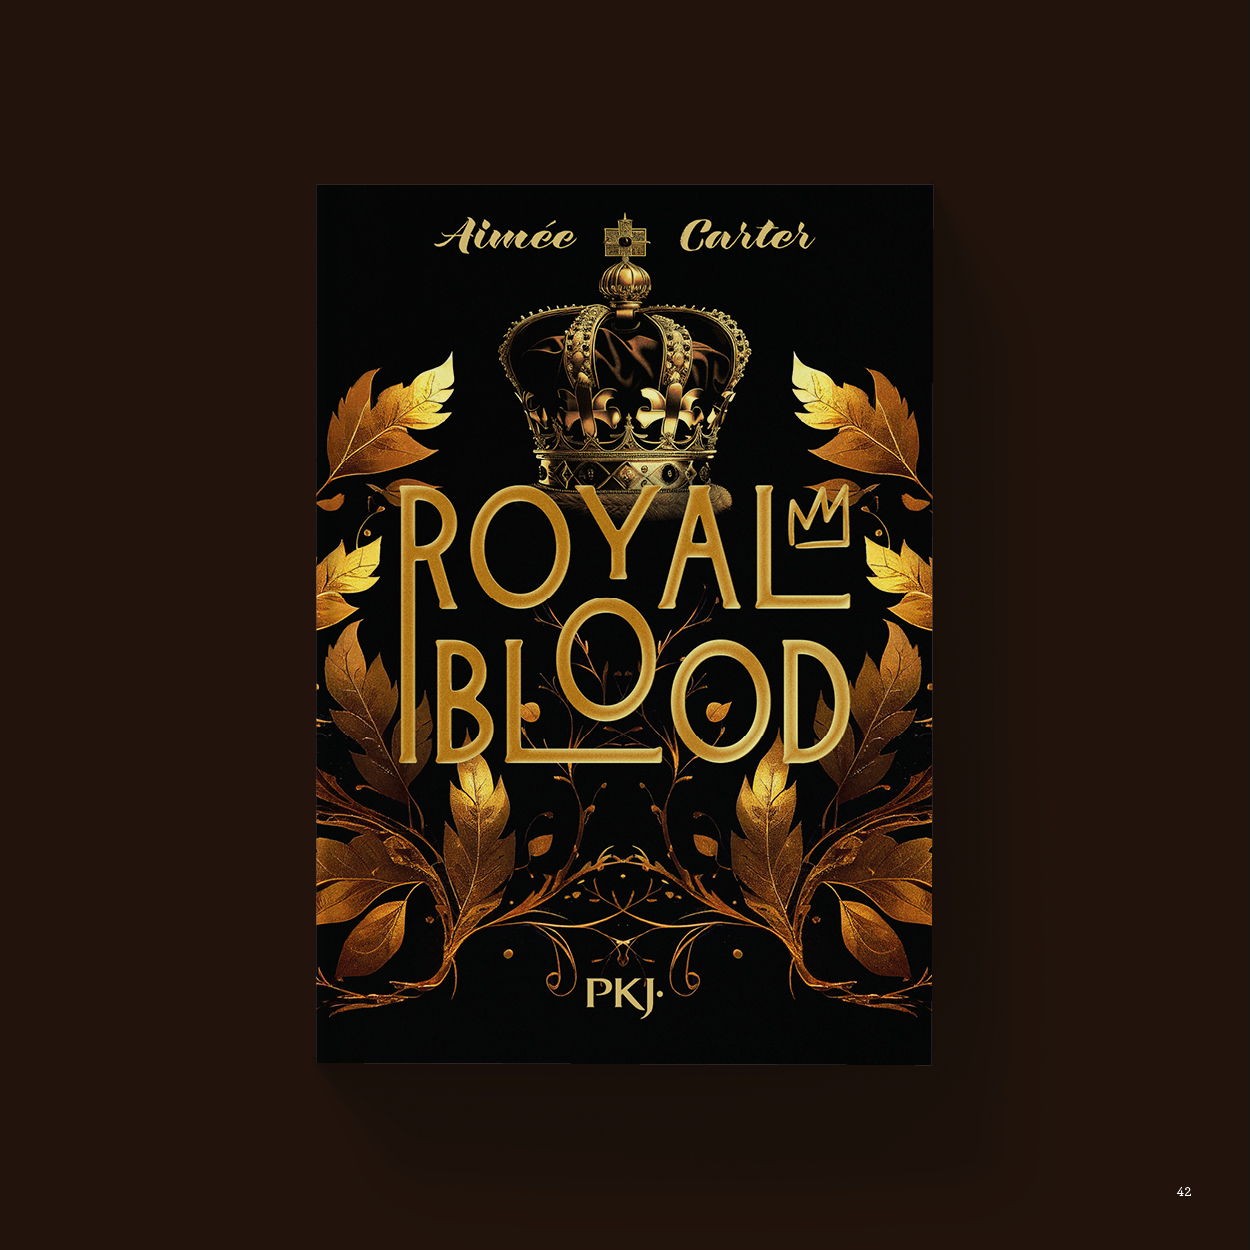 Vue_Royal_blood_42